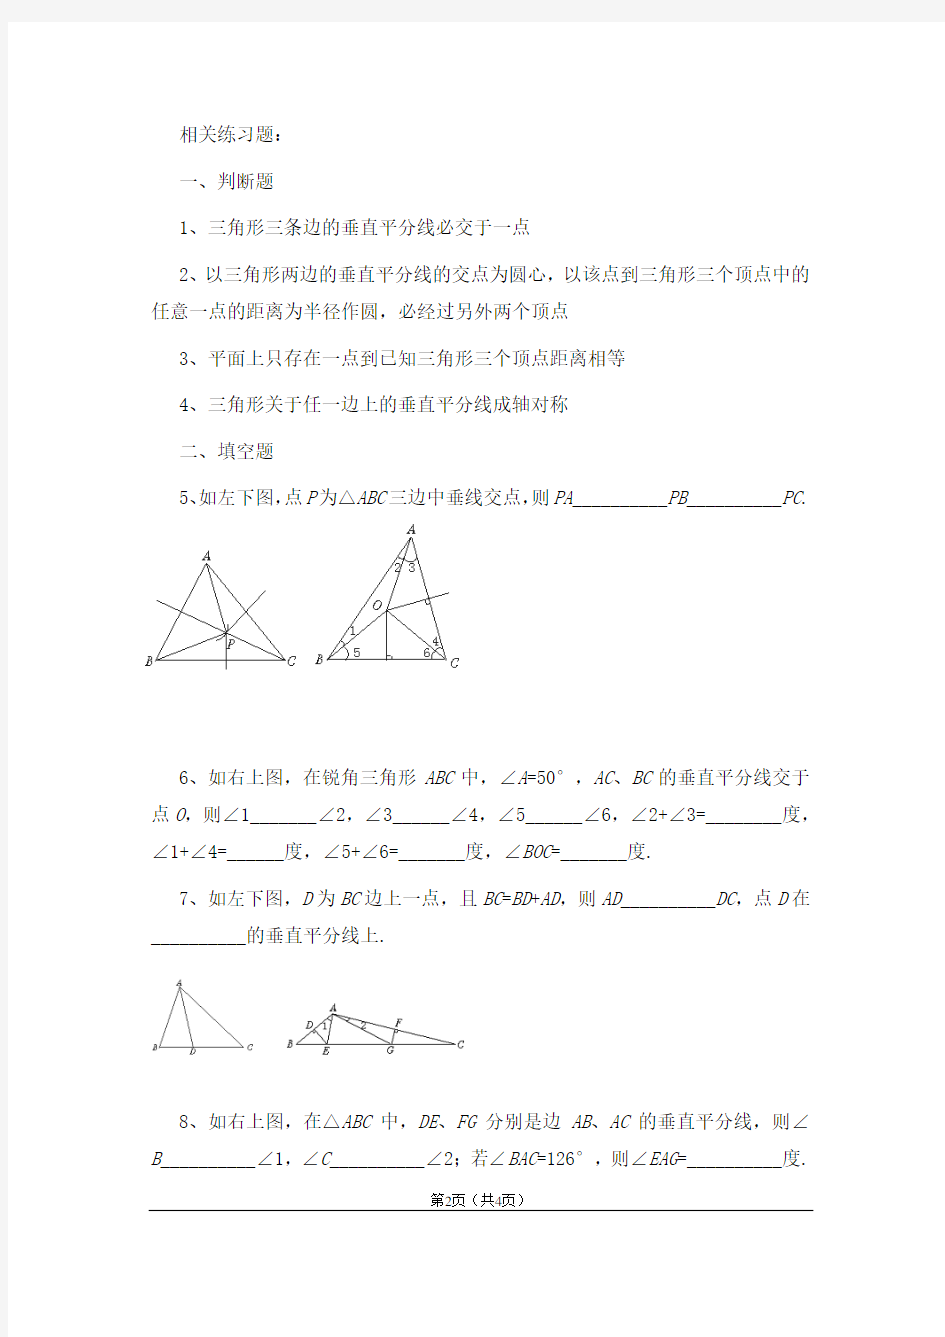 初中数学：三角形中垂线性质证明及练习题(附答案)